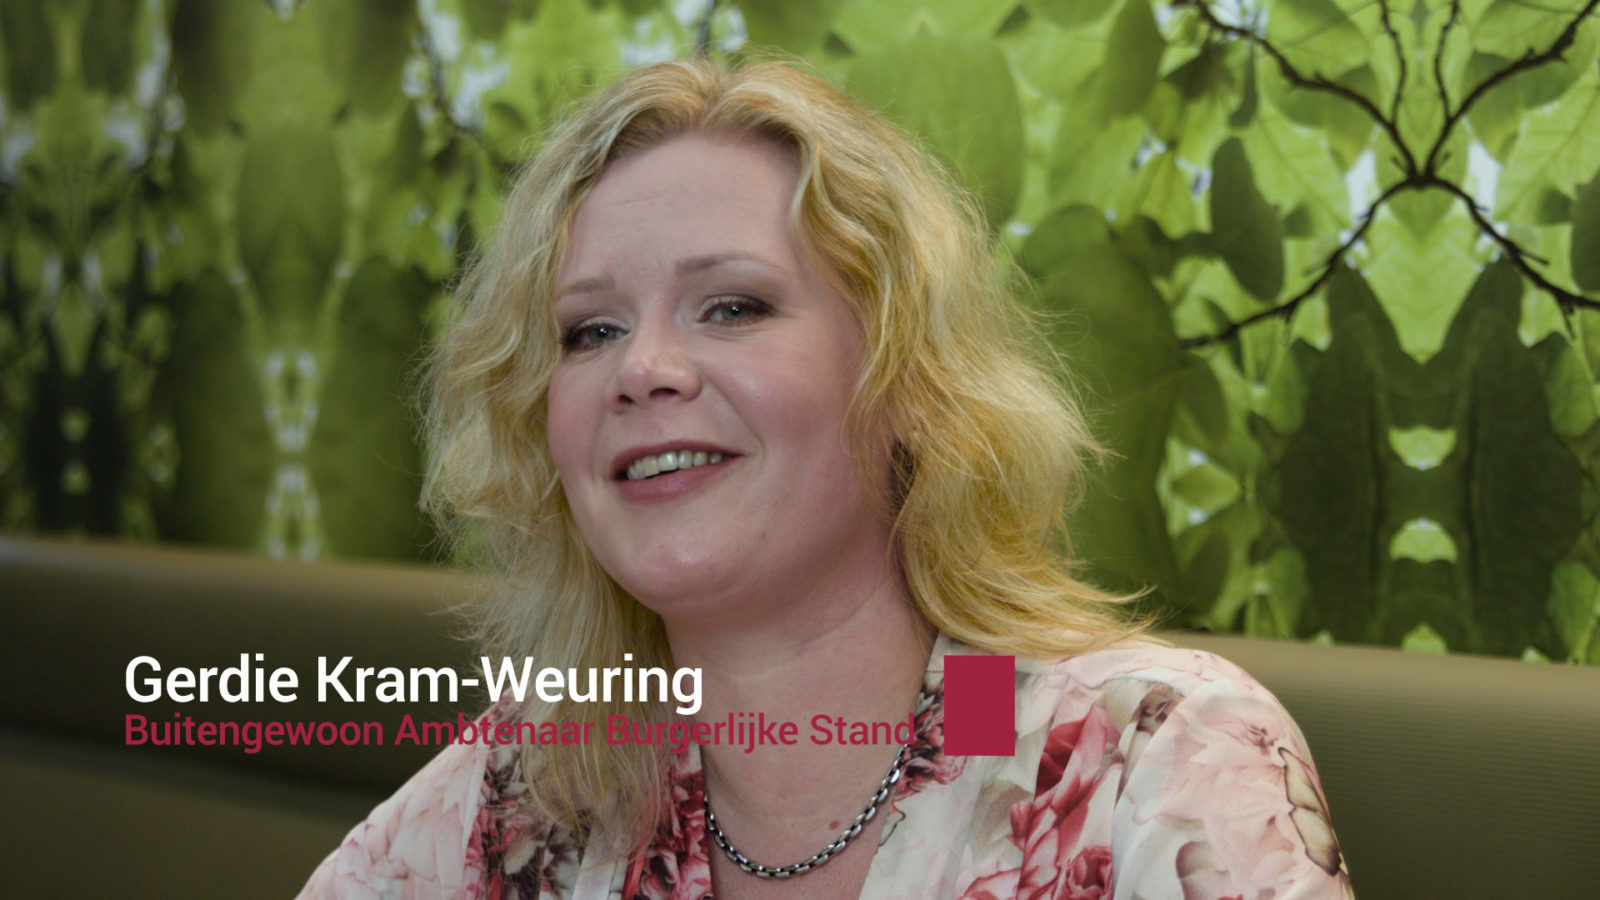 Gerdie Kram-Weuring